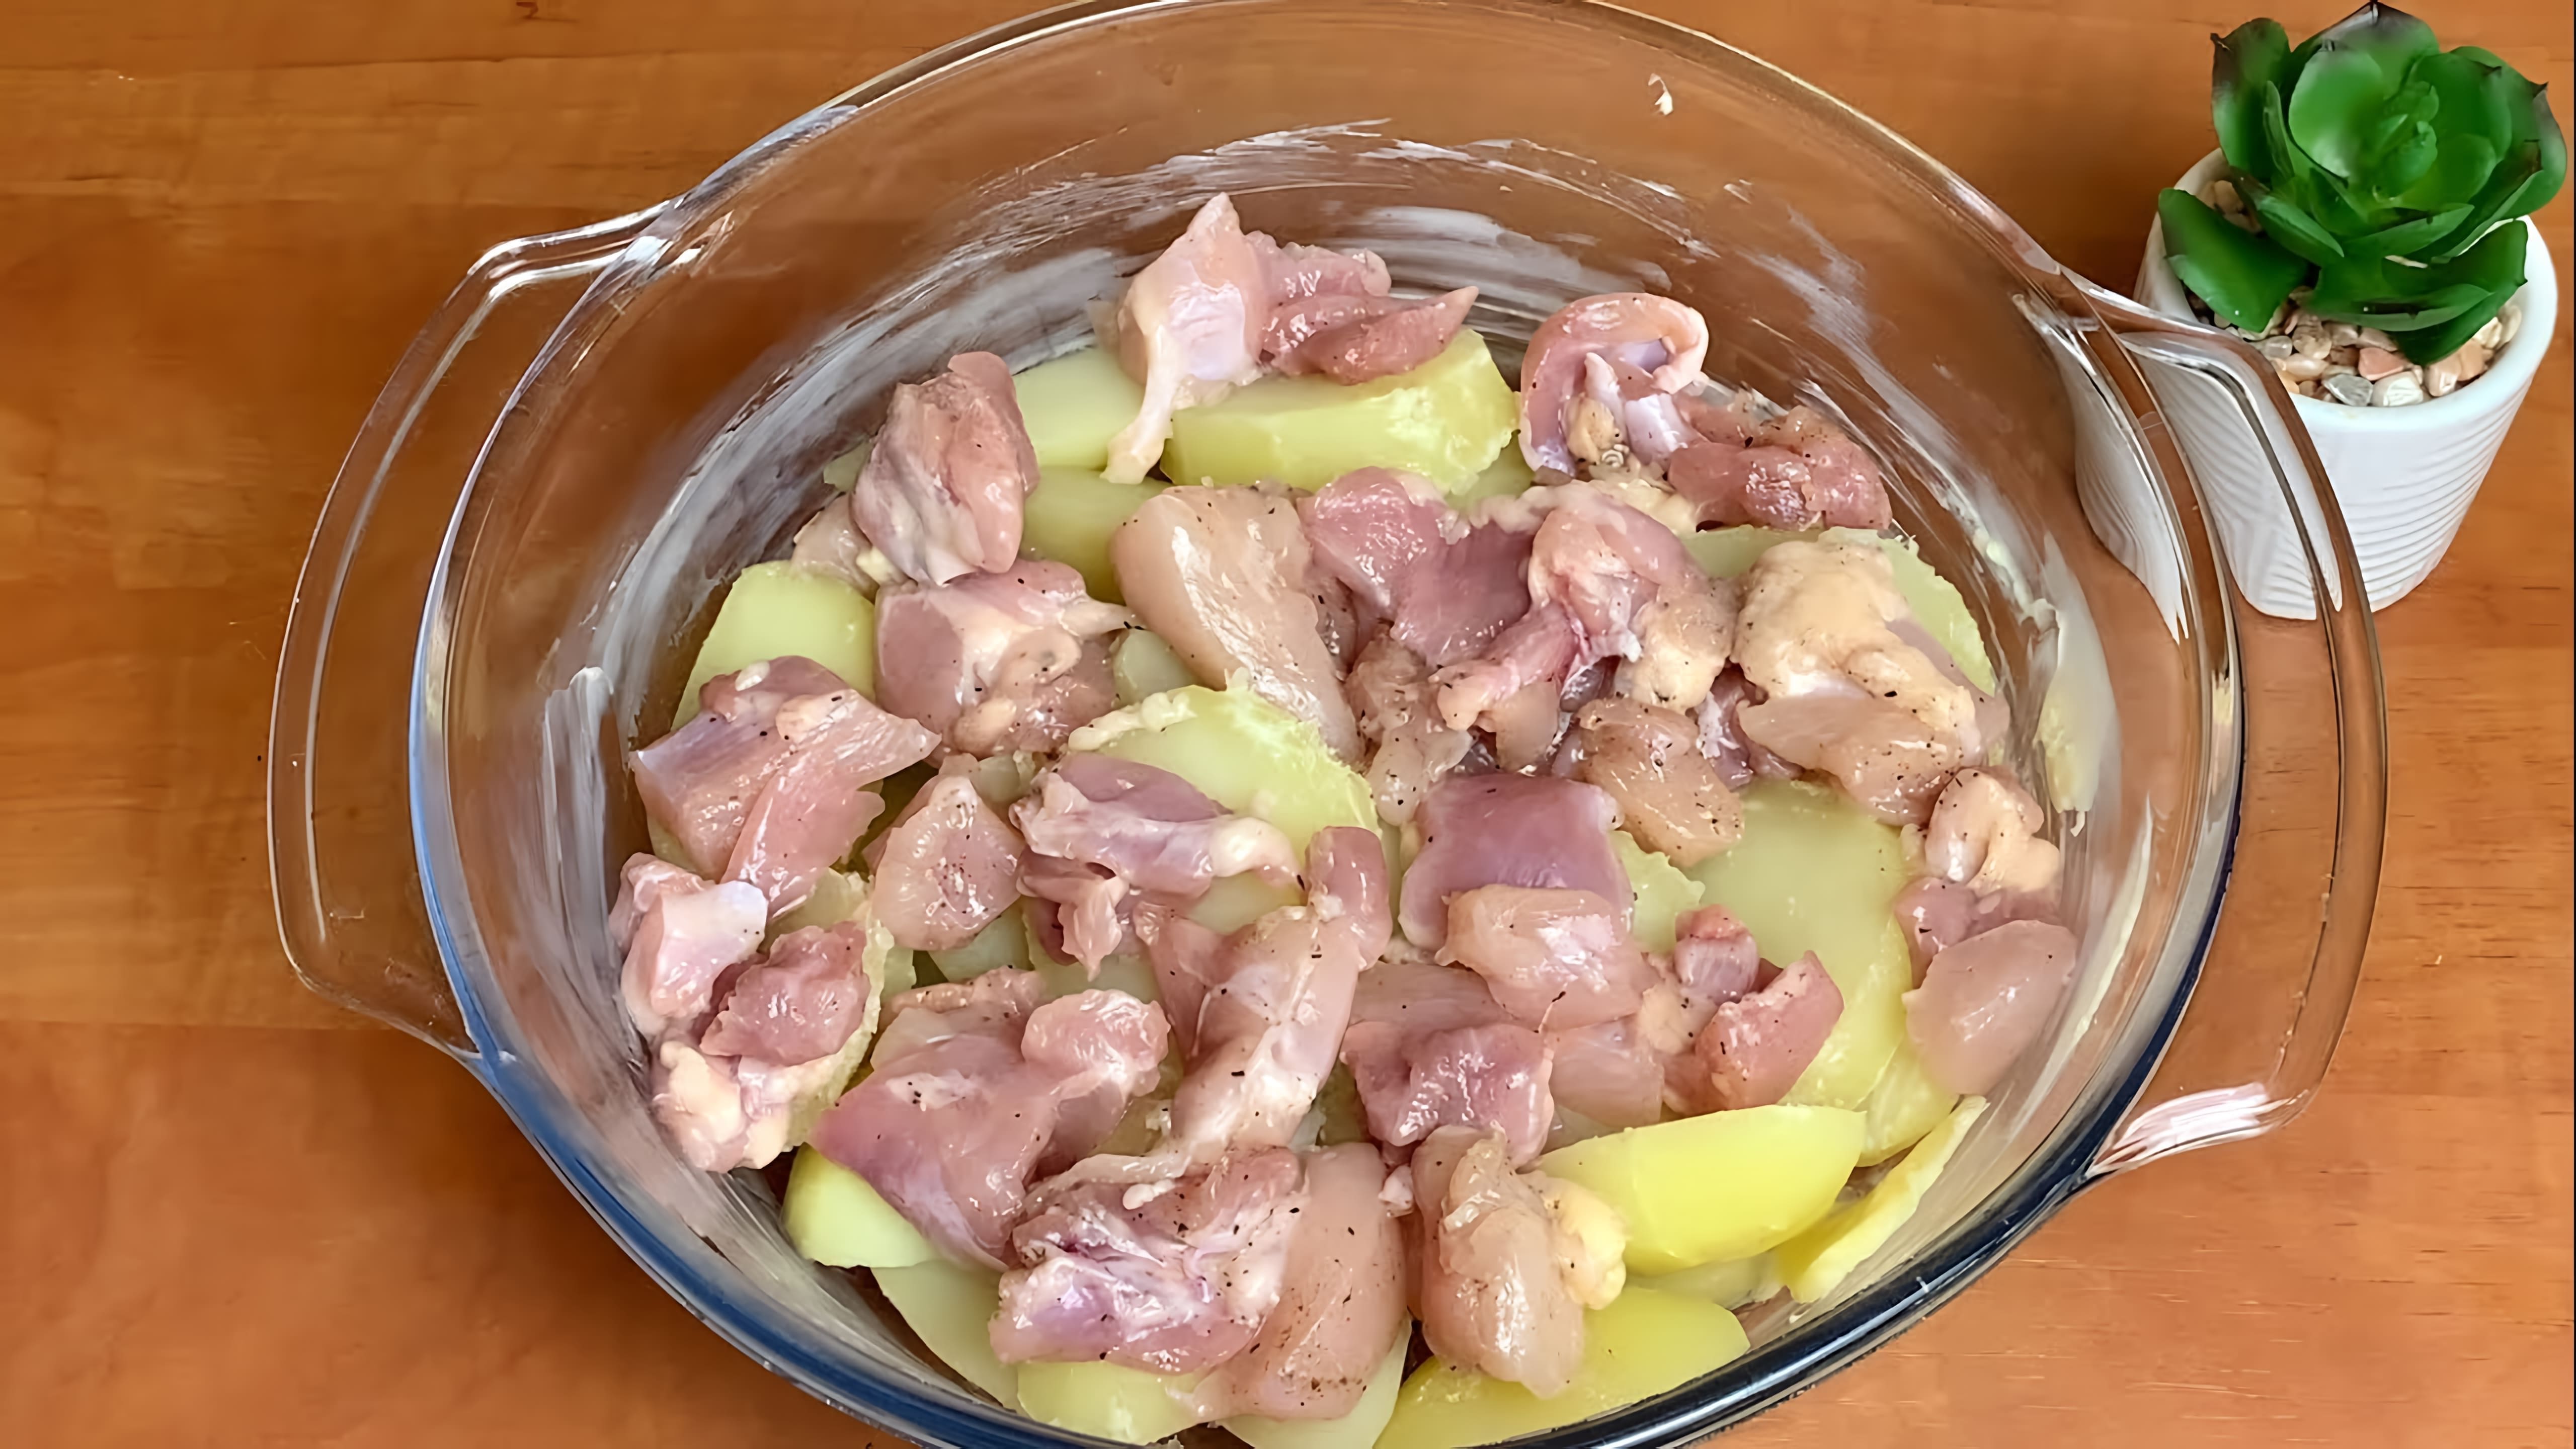 В этом видео демонстрируется простой и вкусный рецепт приготовления куриного филе и картофеля в духовке